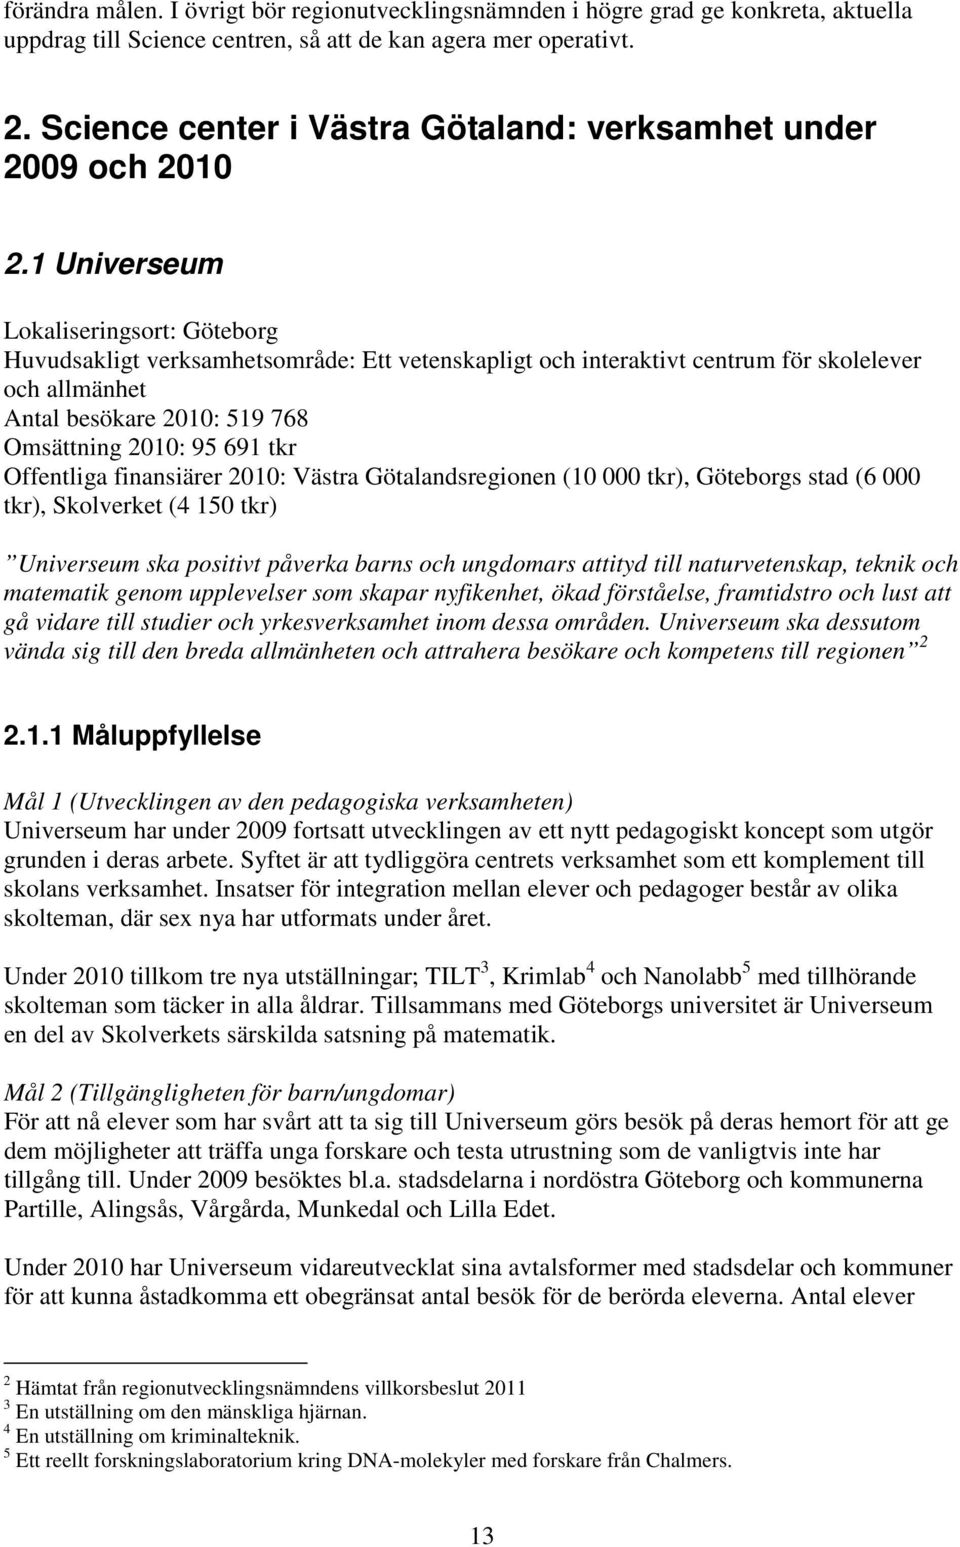 1 Universeum Lokaliseringsort: Göteborg Huvudsakligt verksamhetsområde: Ett vetenskapligt och interaktivt centrum för skolelever och allmänhet Antal besökare 2010: 519 768 Omsättning 2010: 95 691 tkr